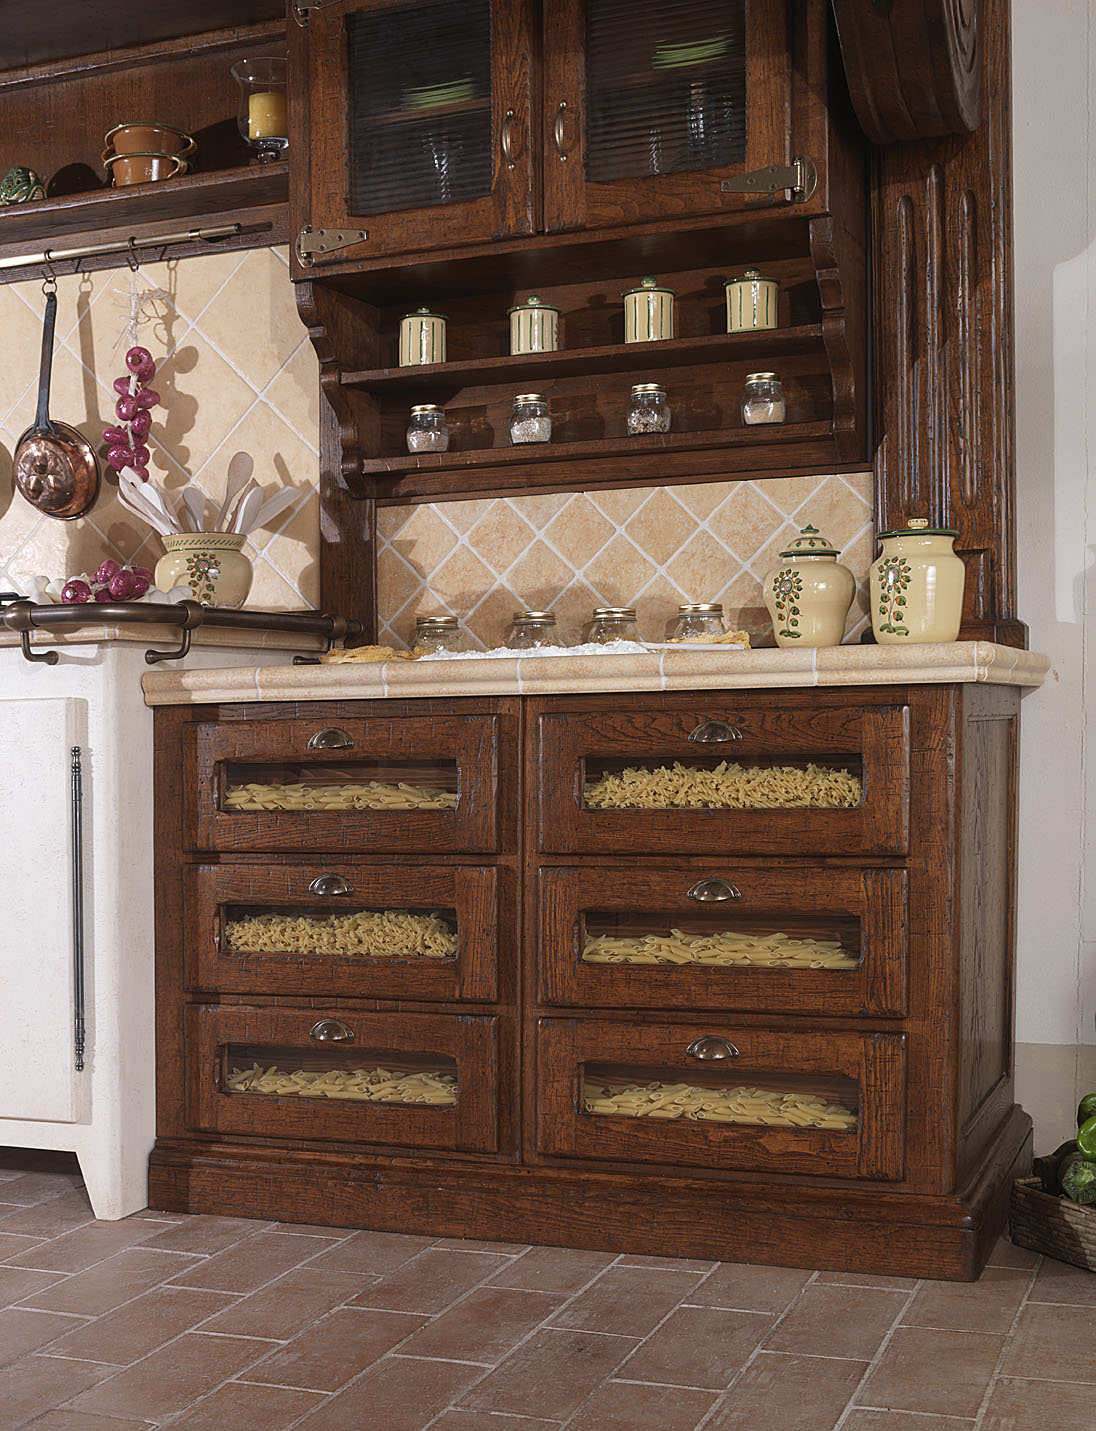 Бежево-коричневый кухонный гарнитур в стиле кантри